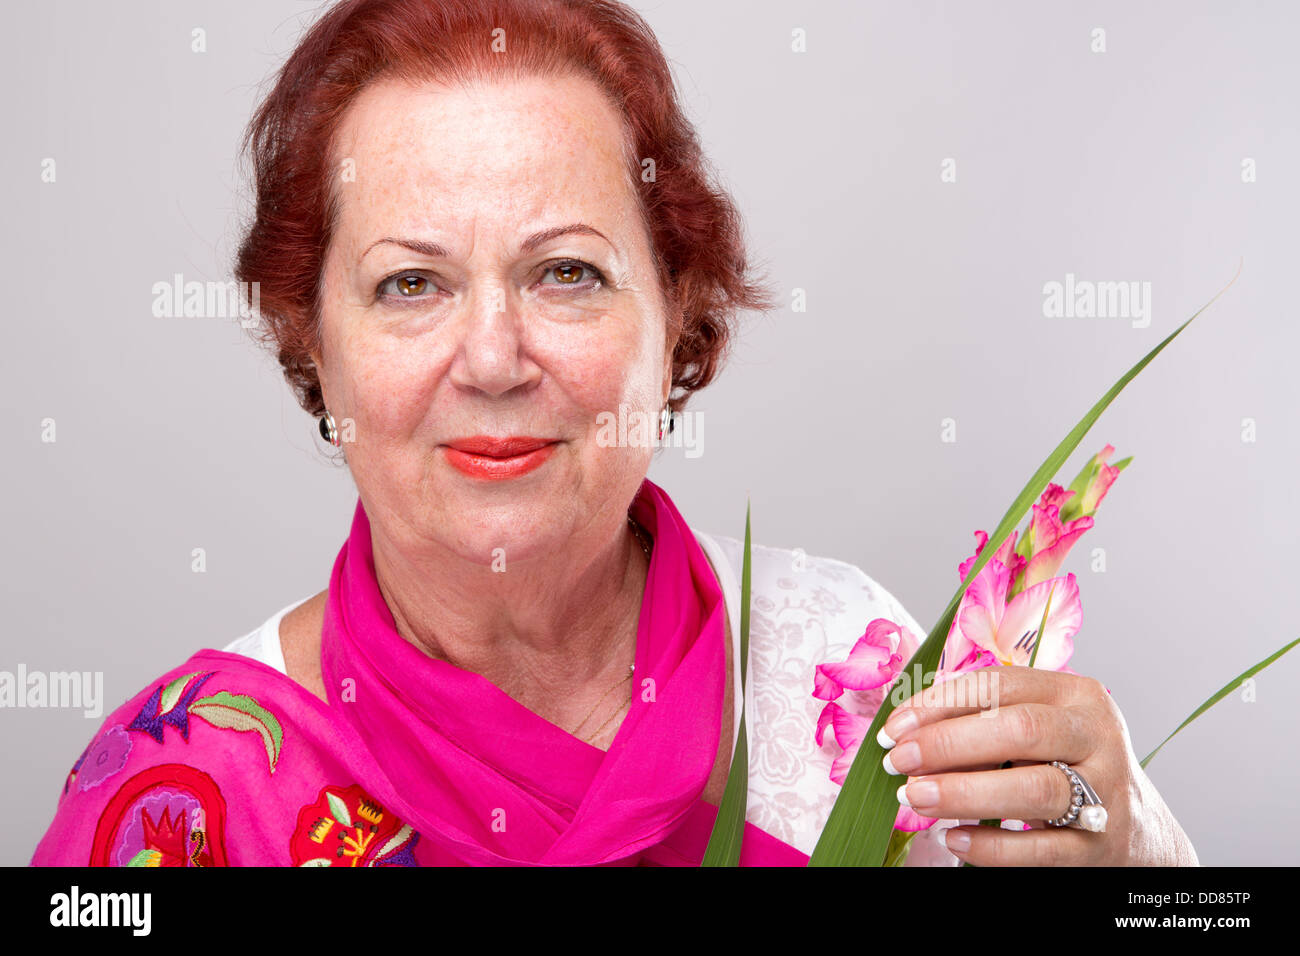 Red Hair Senior Woman mit Gladiolen Blume suchen bestimmt. Stockfoto